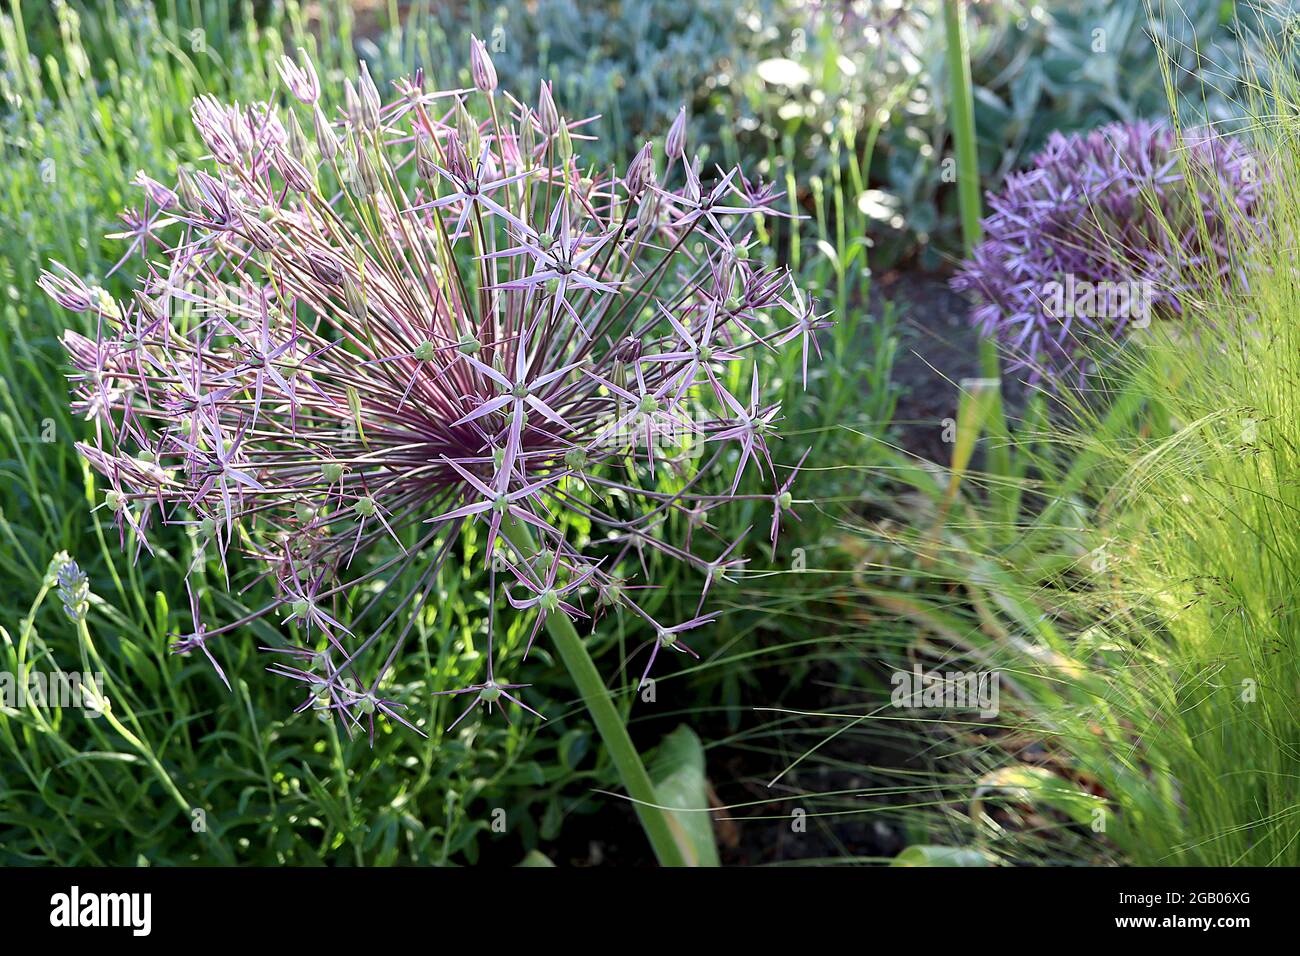 Allium x christophii ‘Purple Rain’ Allium Purple Rain - ombel sphérique de fleurs étroites en forme d'étoile pourpre sur tige haute, juin, Angleterre, Royaume-Uni Banque D'Images